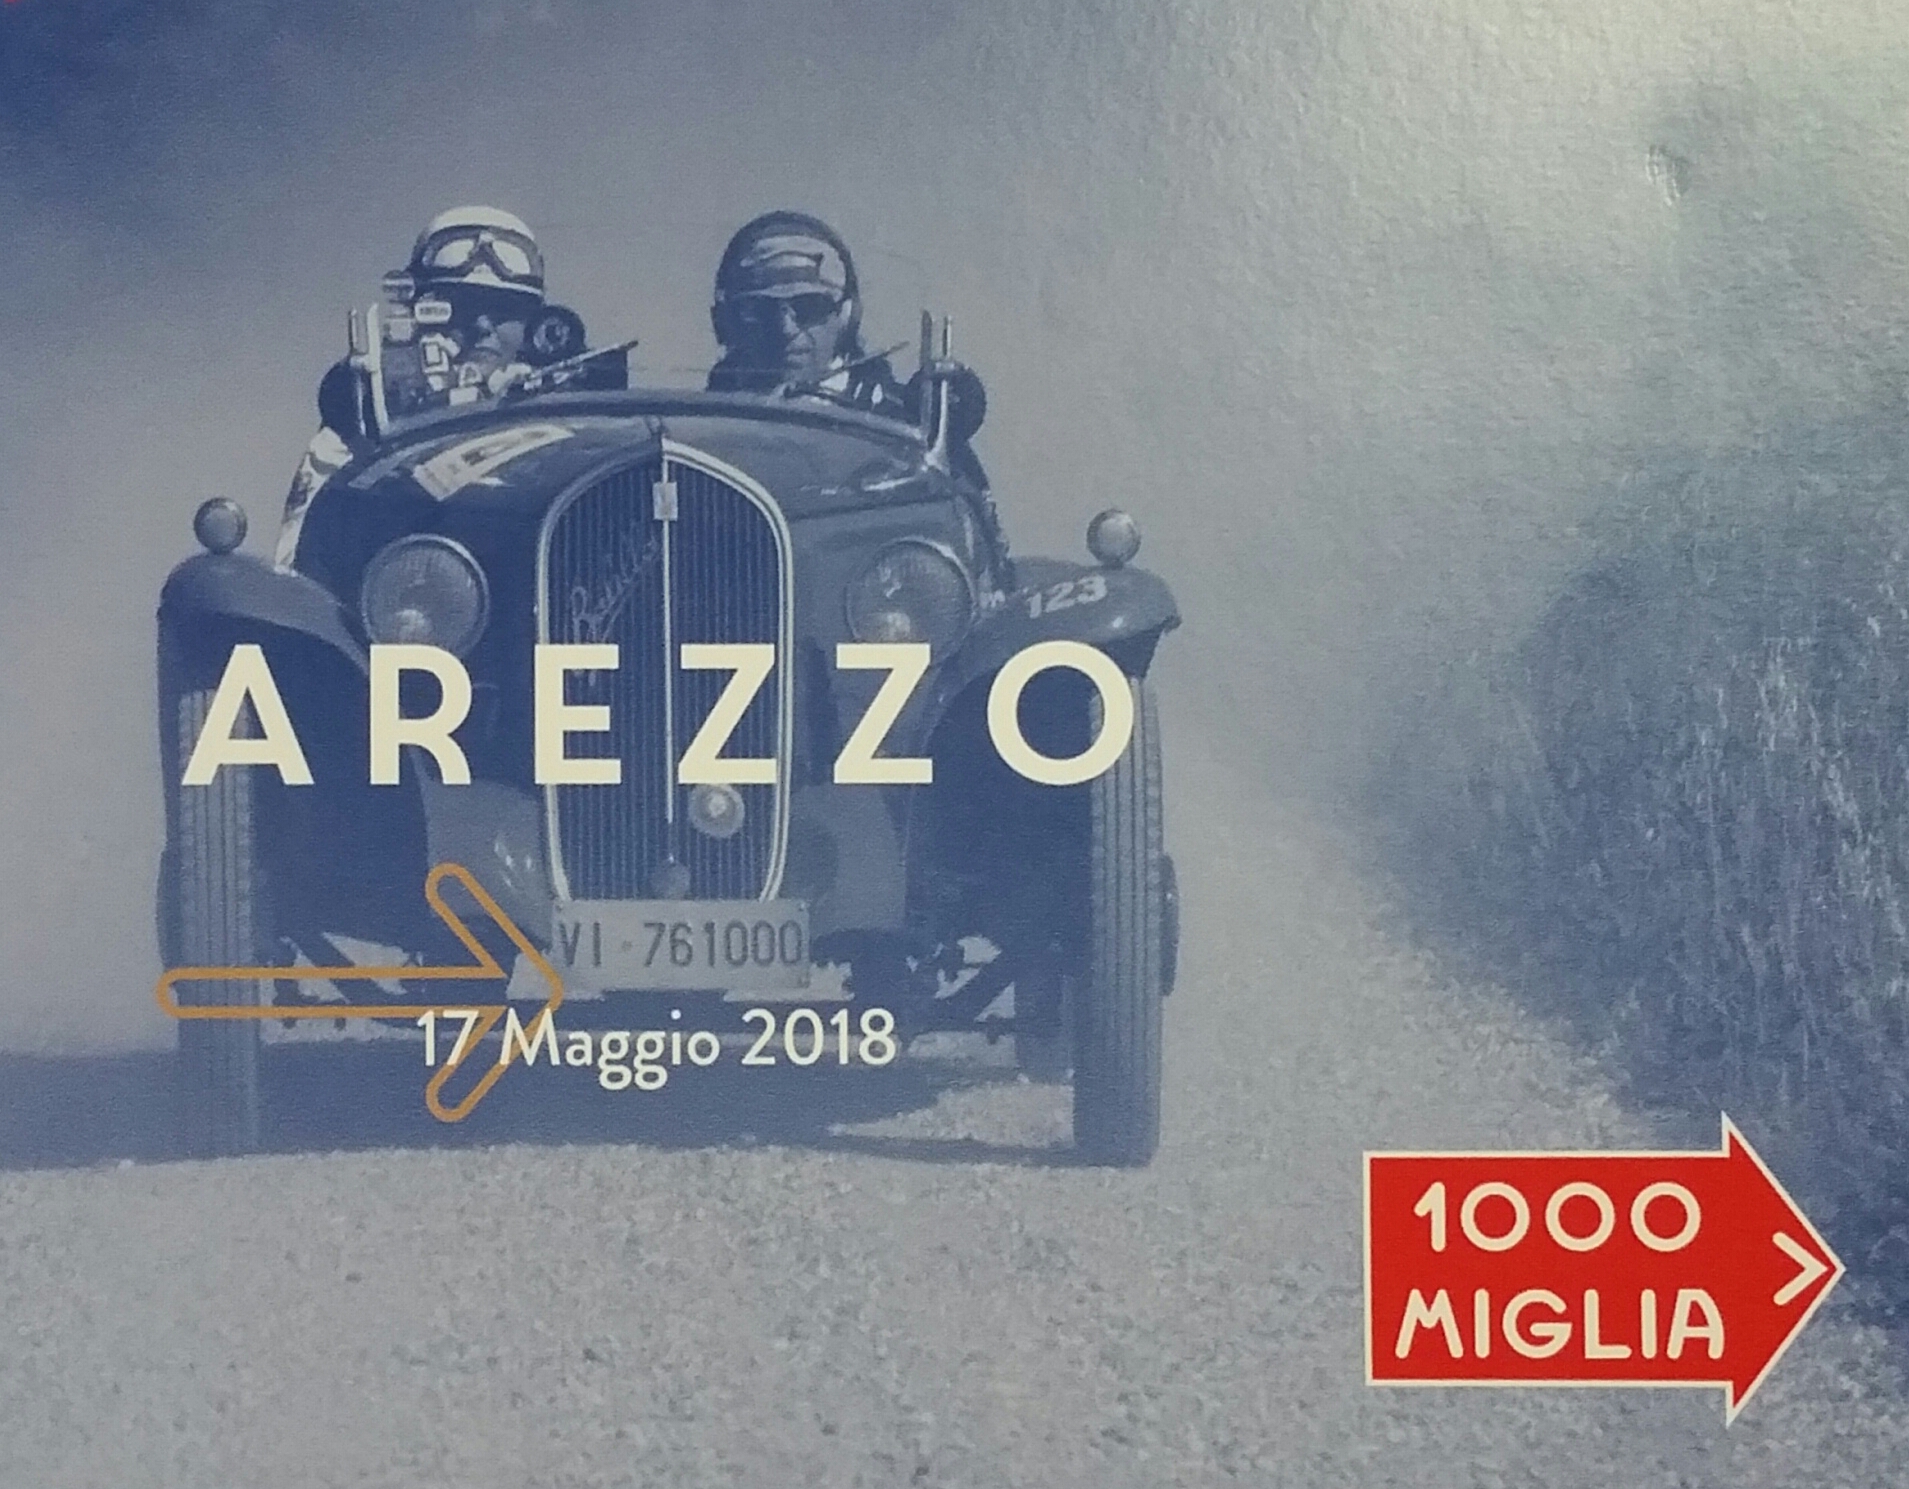 La 1000 miglia fa tappa ad Arezzo